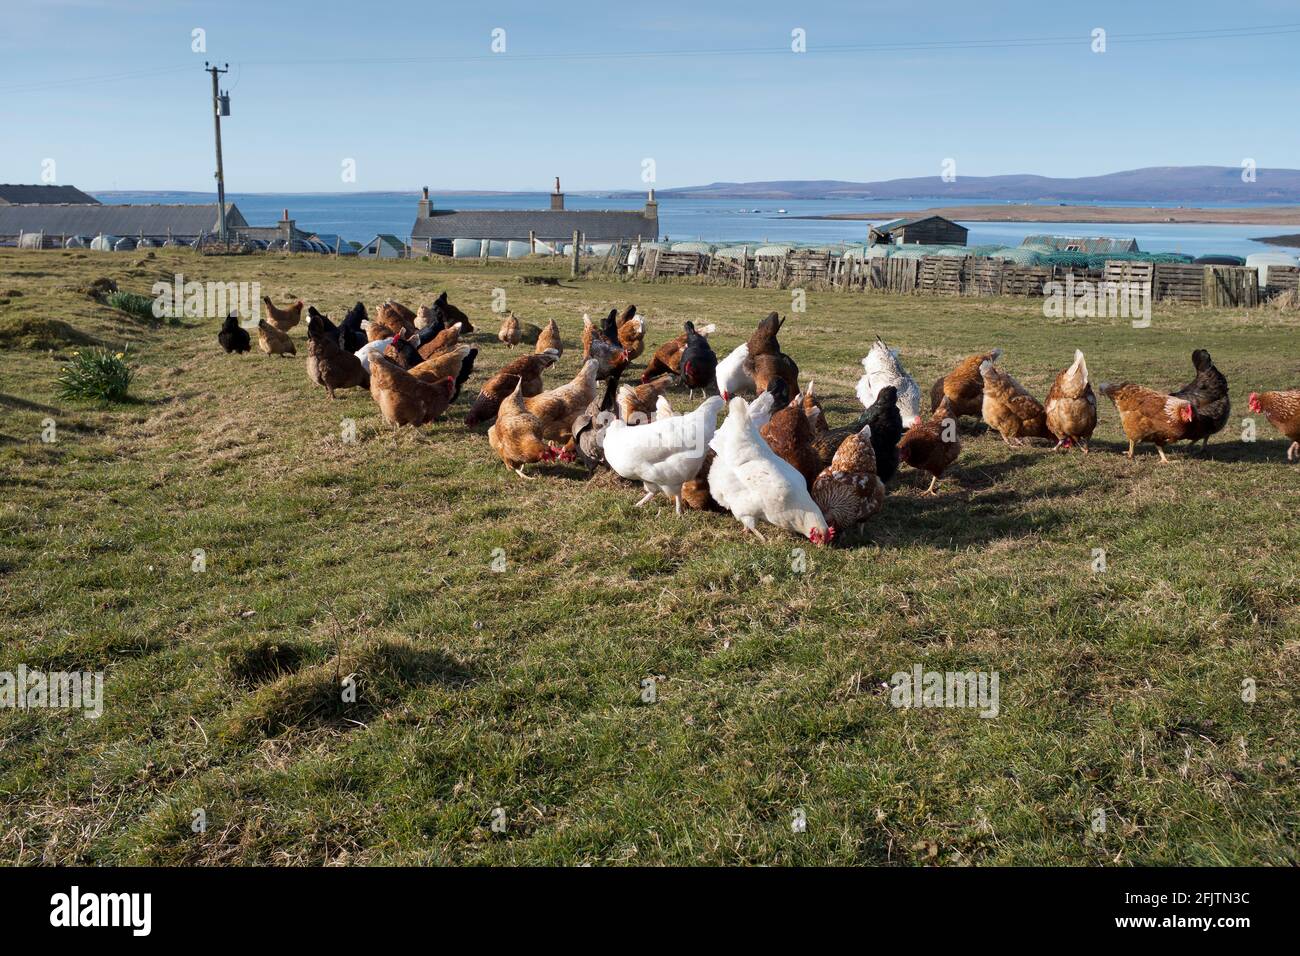 dh Pollo de granja ORKNEY Pollos de gallinas de gama libre que alimentan gallinas freerange Gran Bretaña Reino Unido Gallus gallus domesticus forrajear aves de corral domésticas Foto de stock